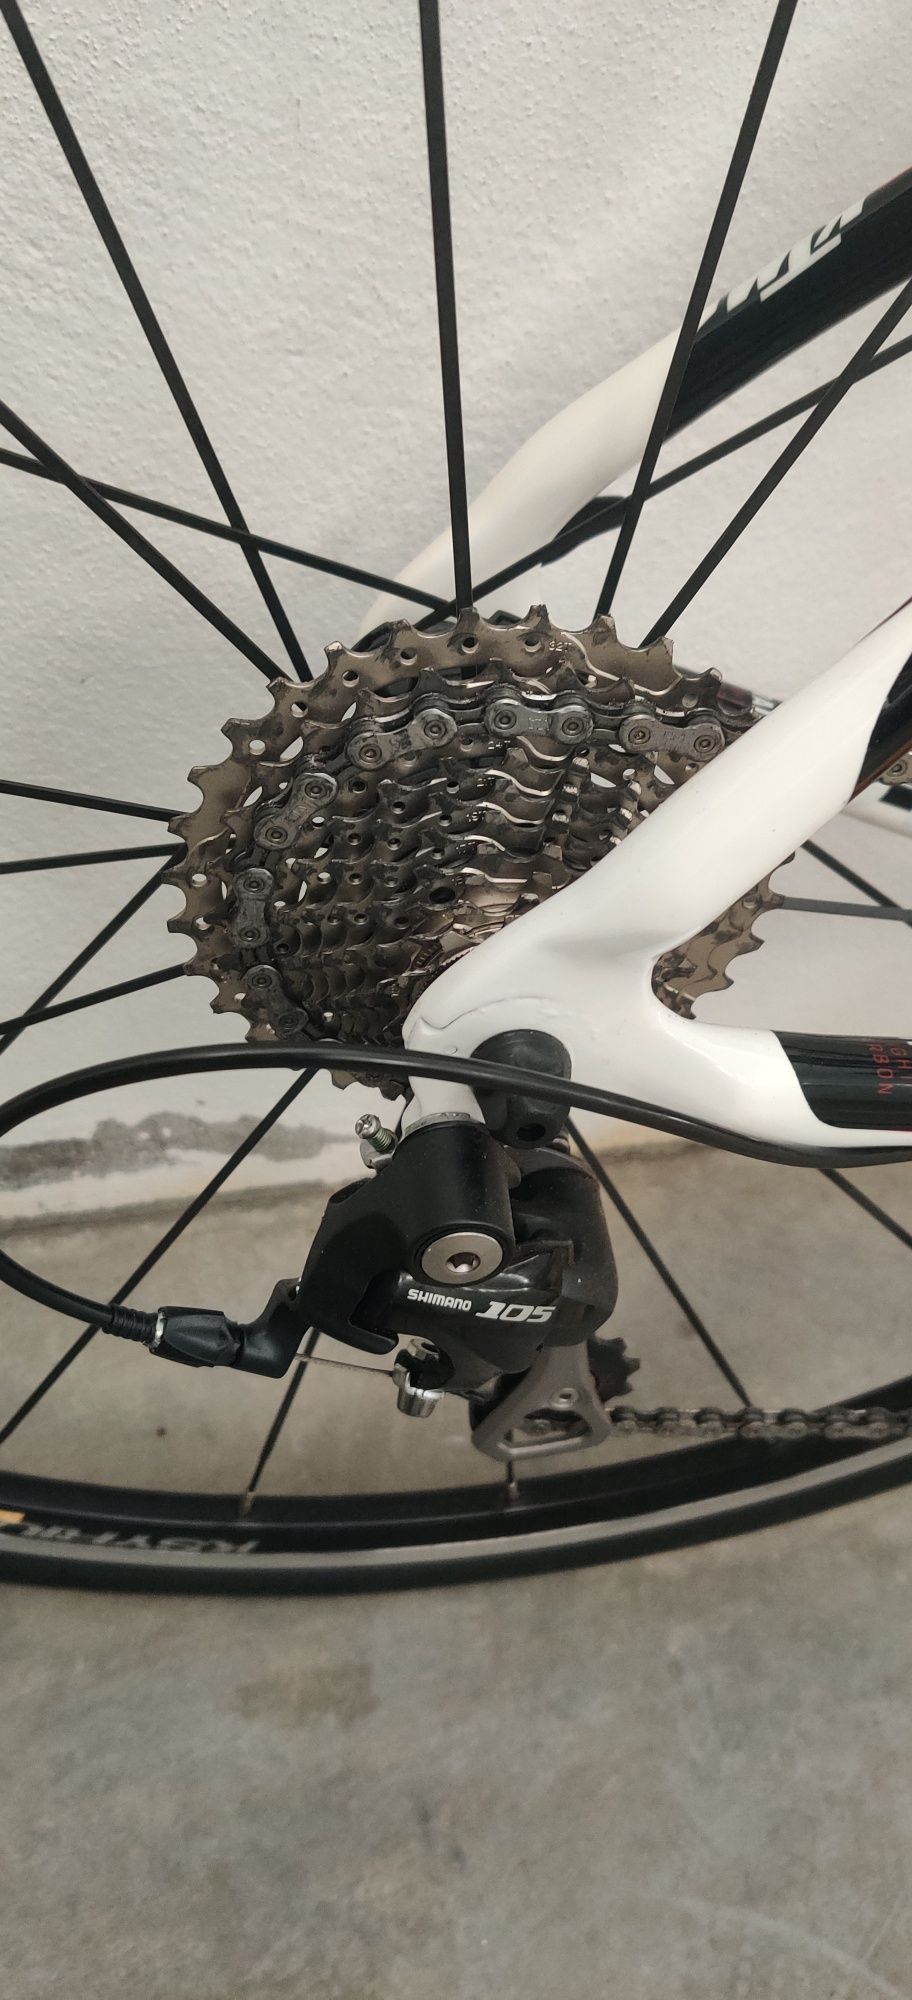 Bicicleta KTM LC Carbon e sistemas shimano novos